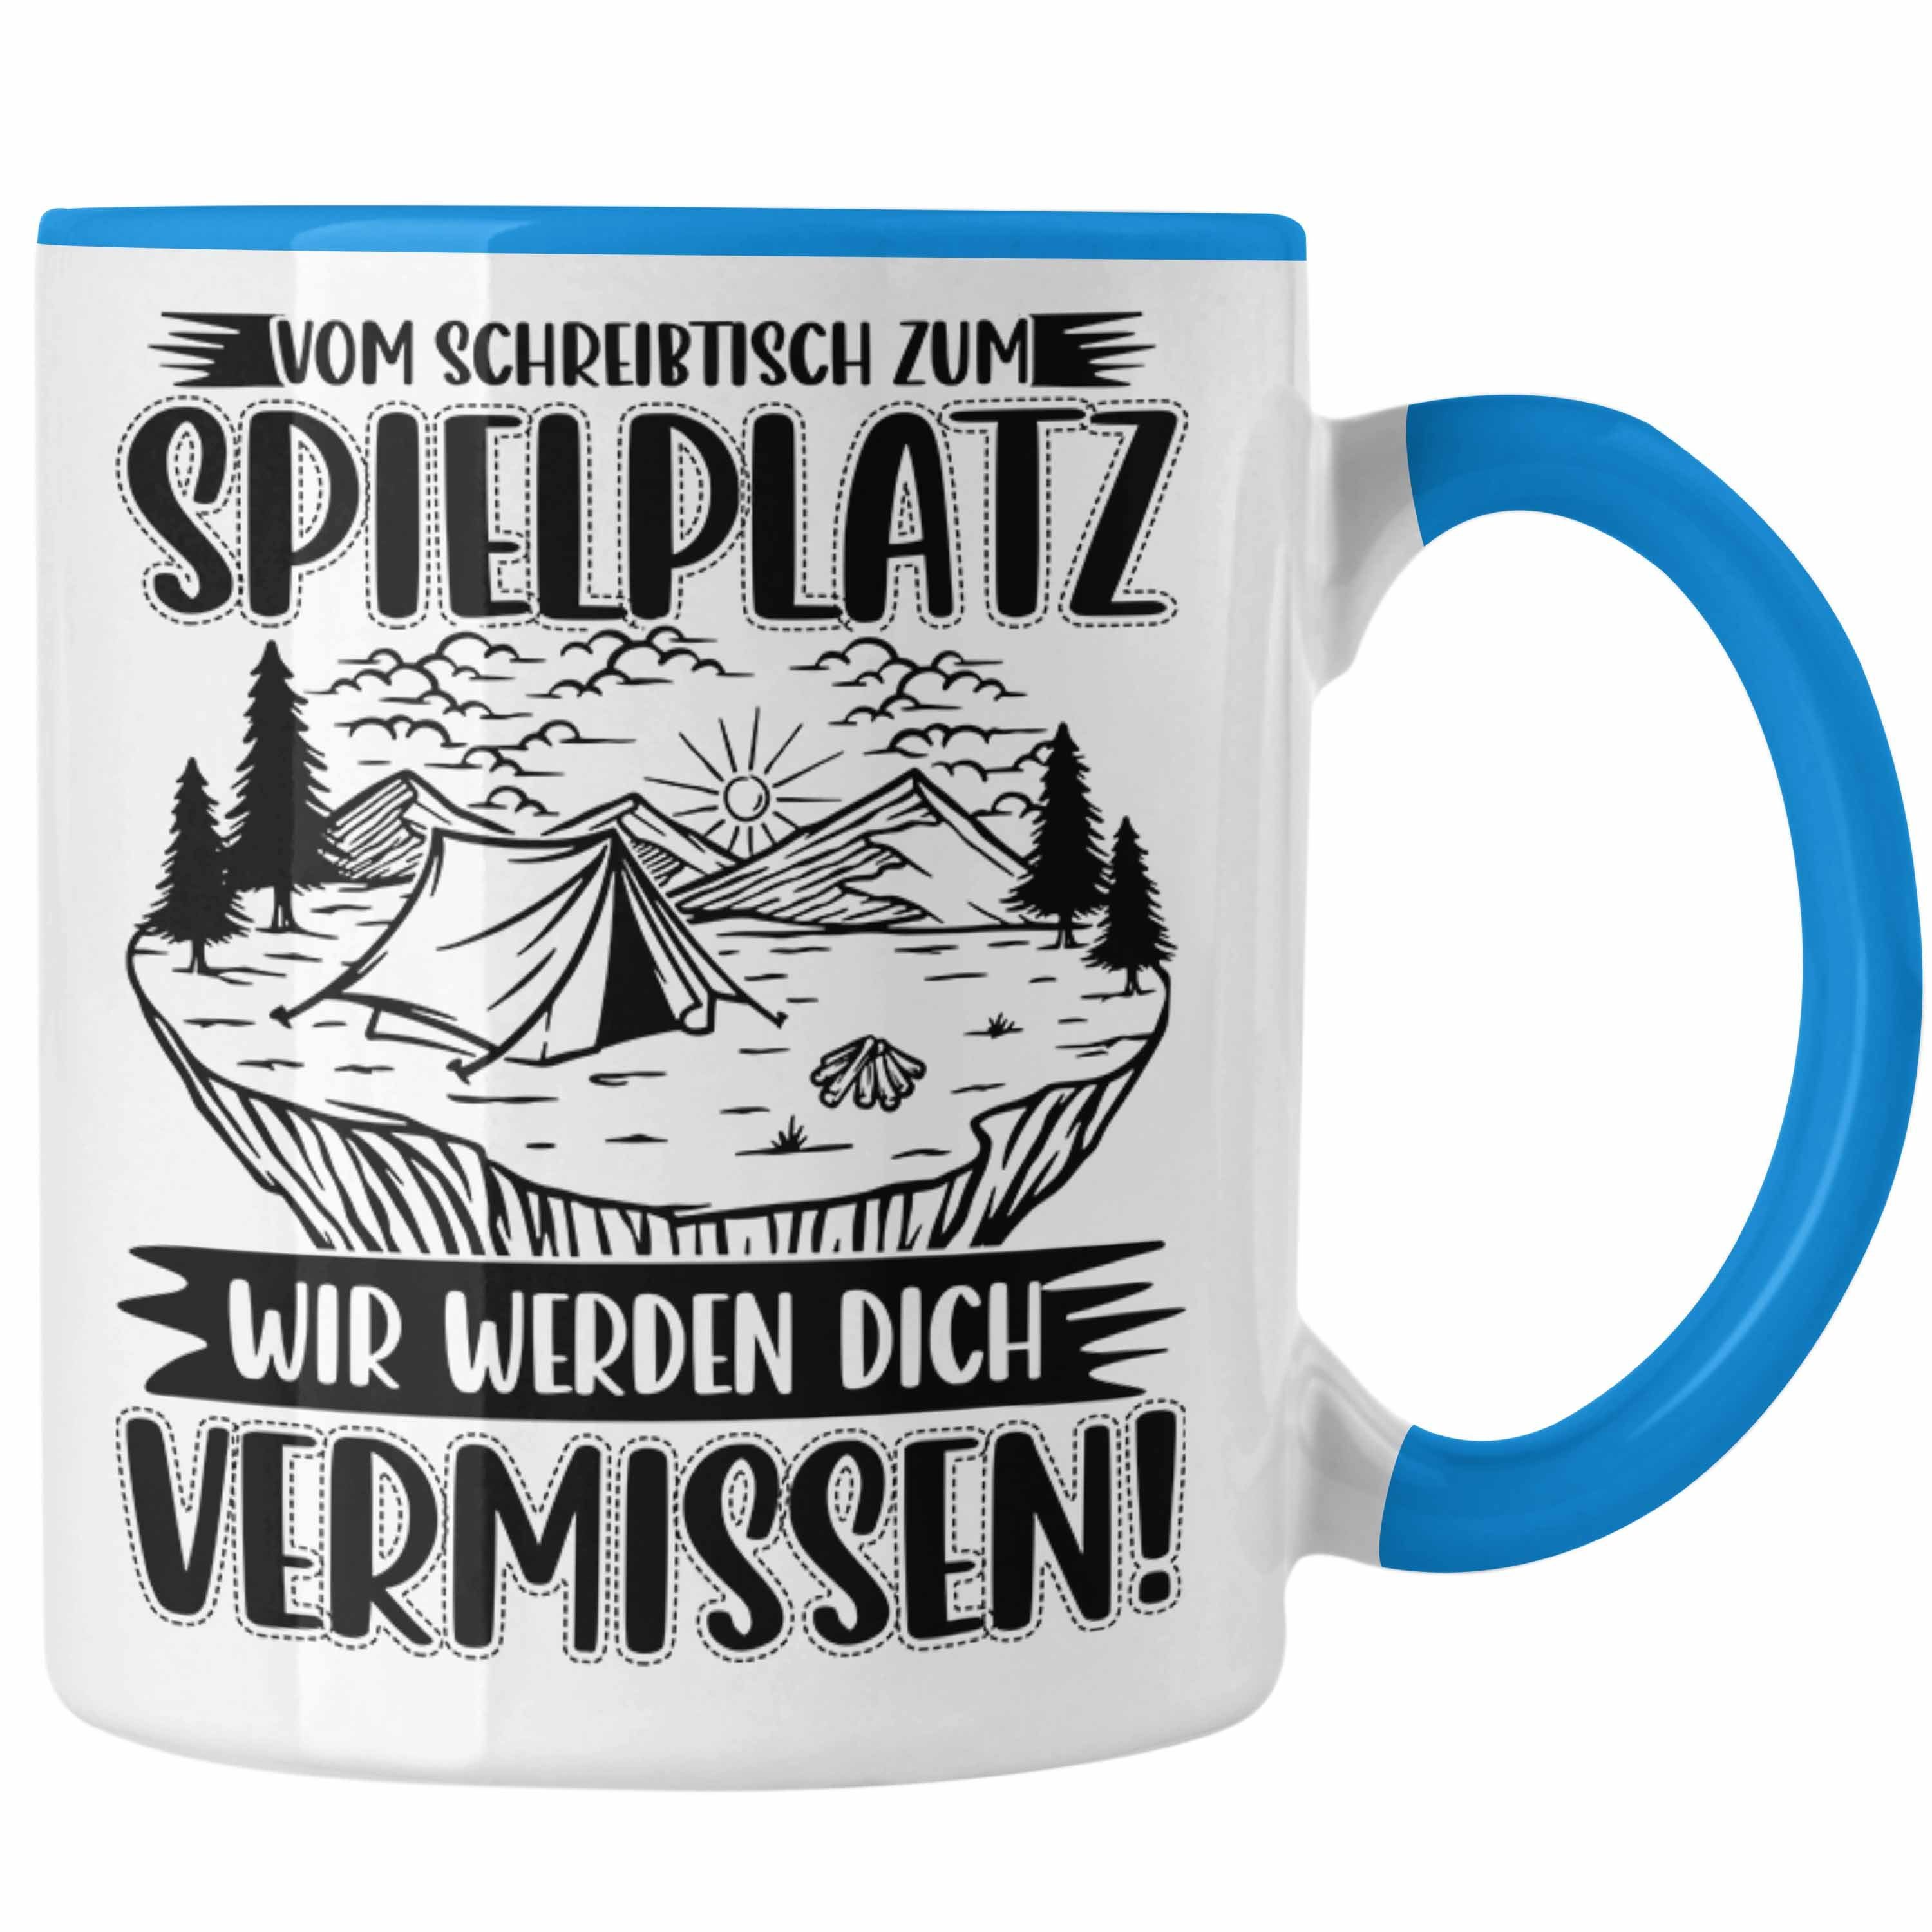 Trendation Tasse Mutterschutz Tasse Kaffeetasse Mutterschutz Abschied Geschenk Blau Kollegi